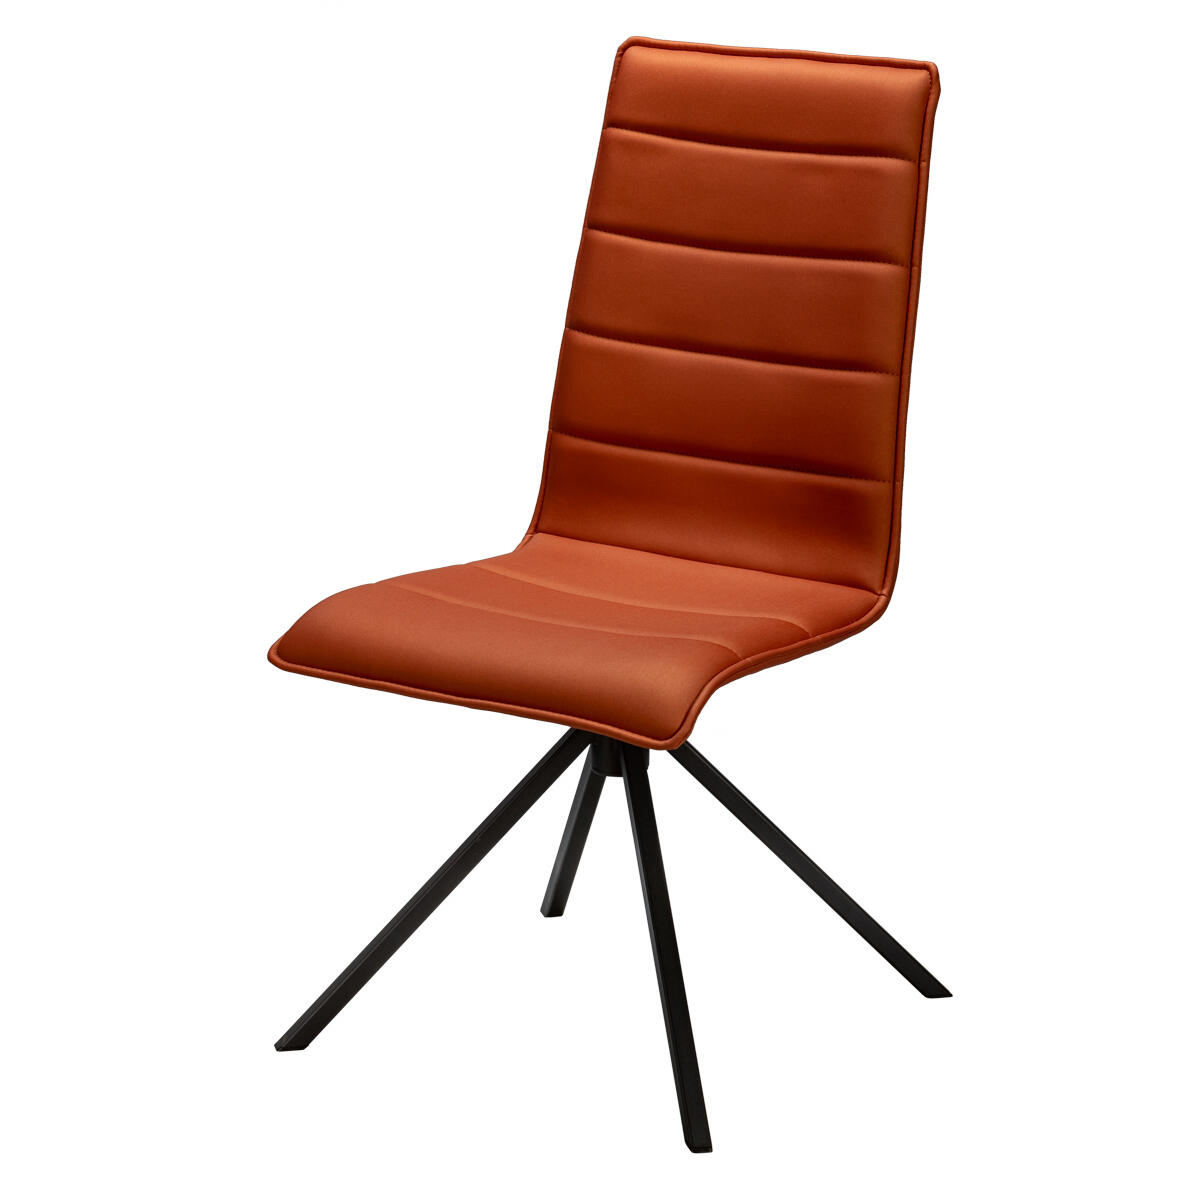 LELLIN chaise tissu Silvertex brique pietement métal laqué rotatif personnalisable divers revêtements et piétements made in France